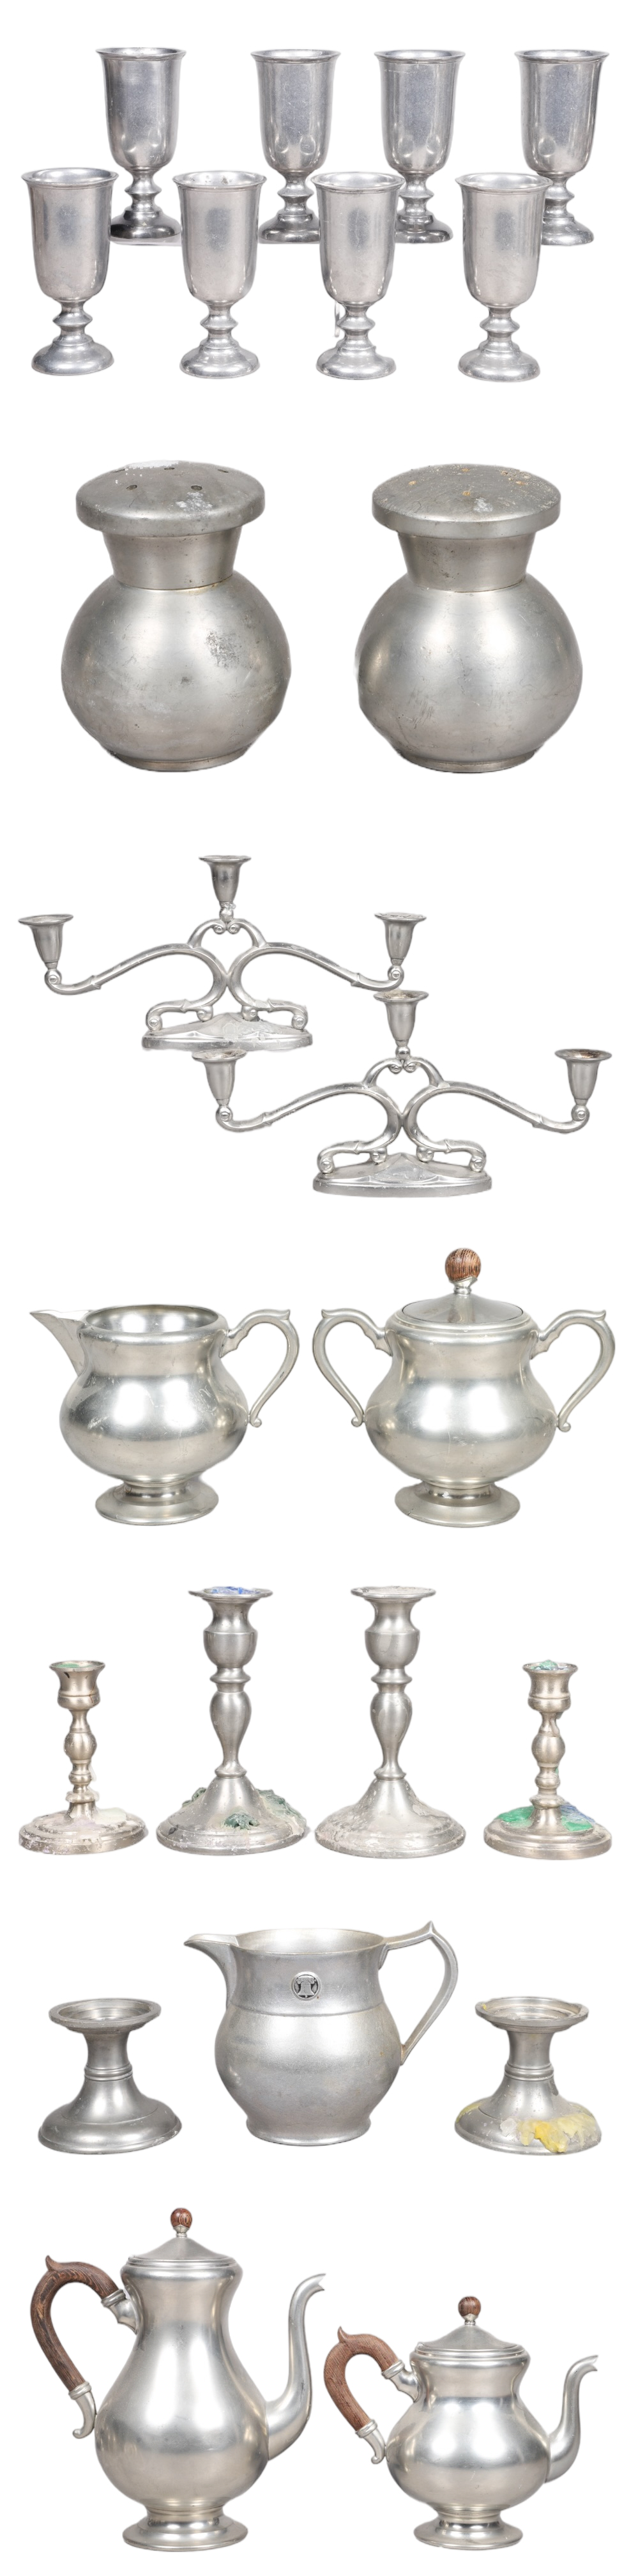 Pewter goblets, candelabras, tea items,